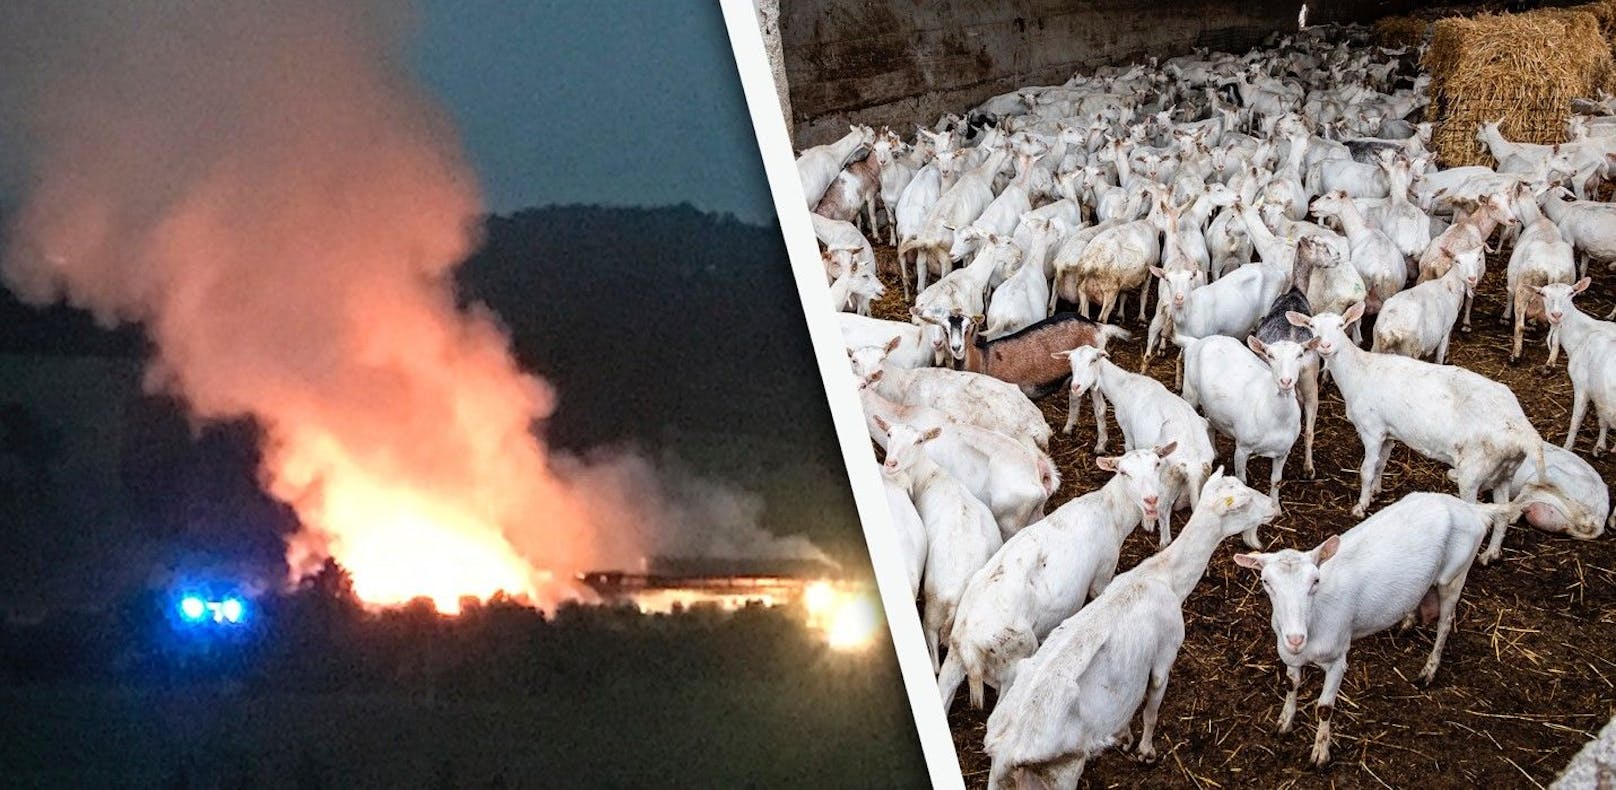 Dutzende Ziegen bei Großbrand auf Bauernhof gerettet